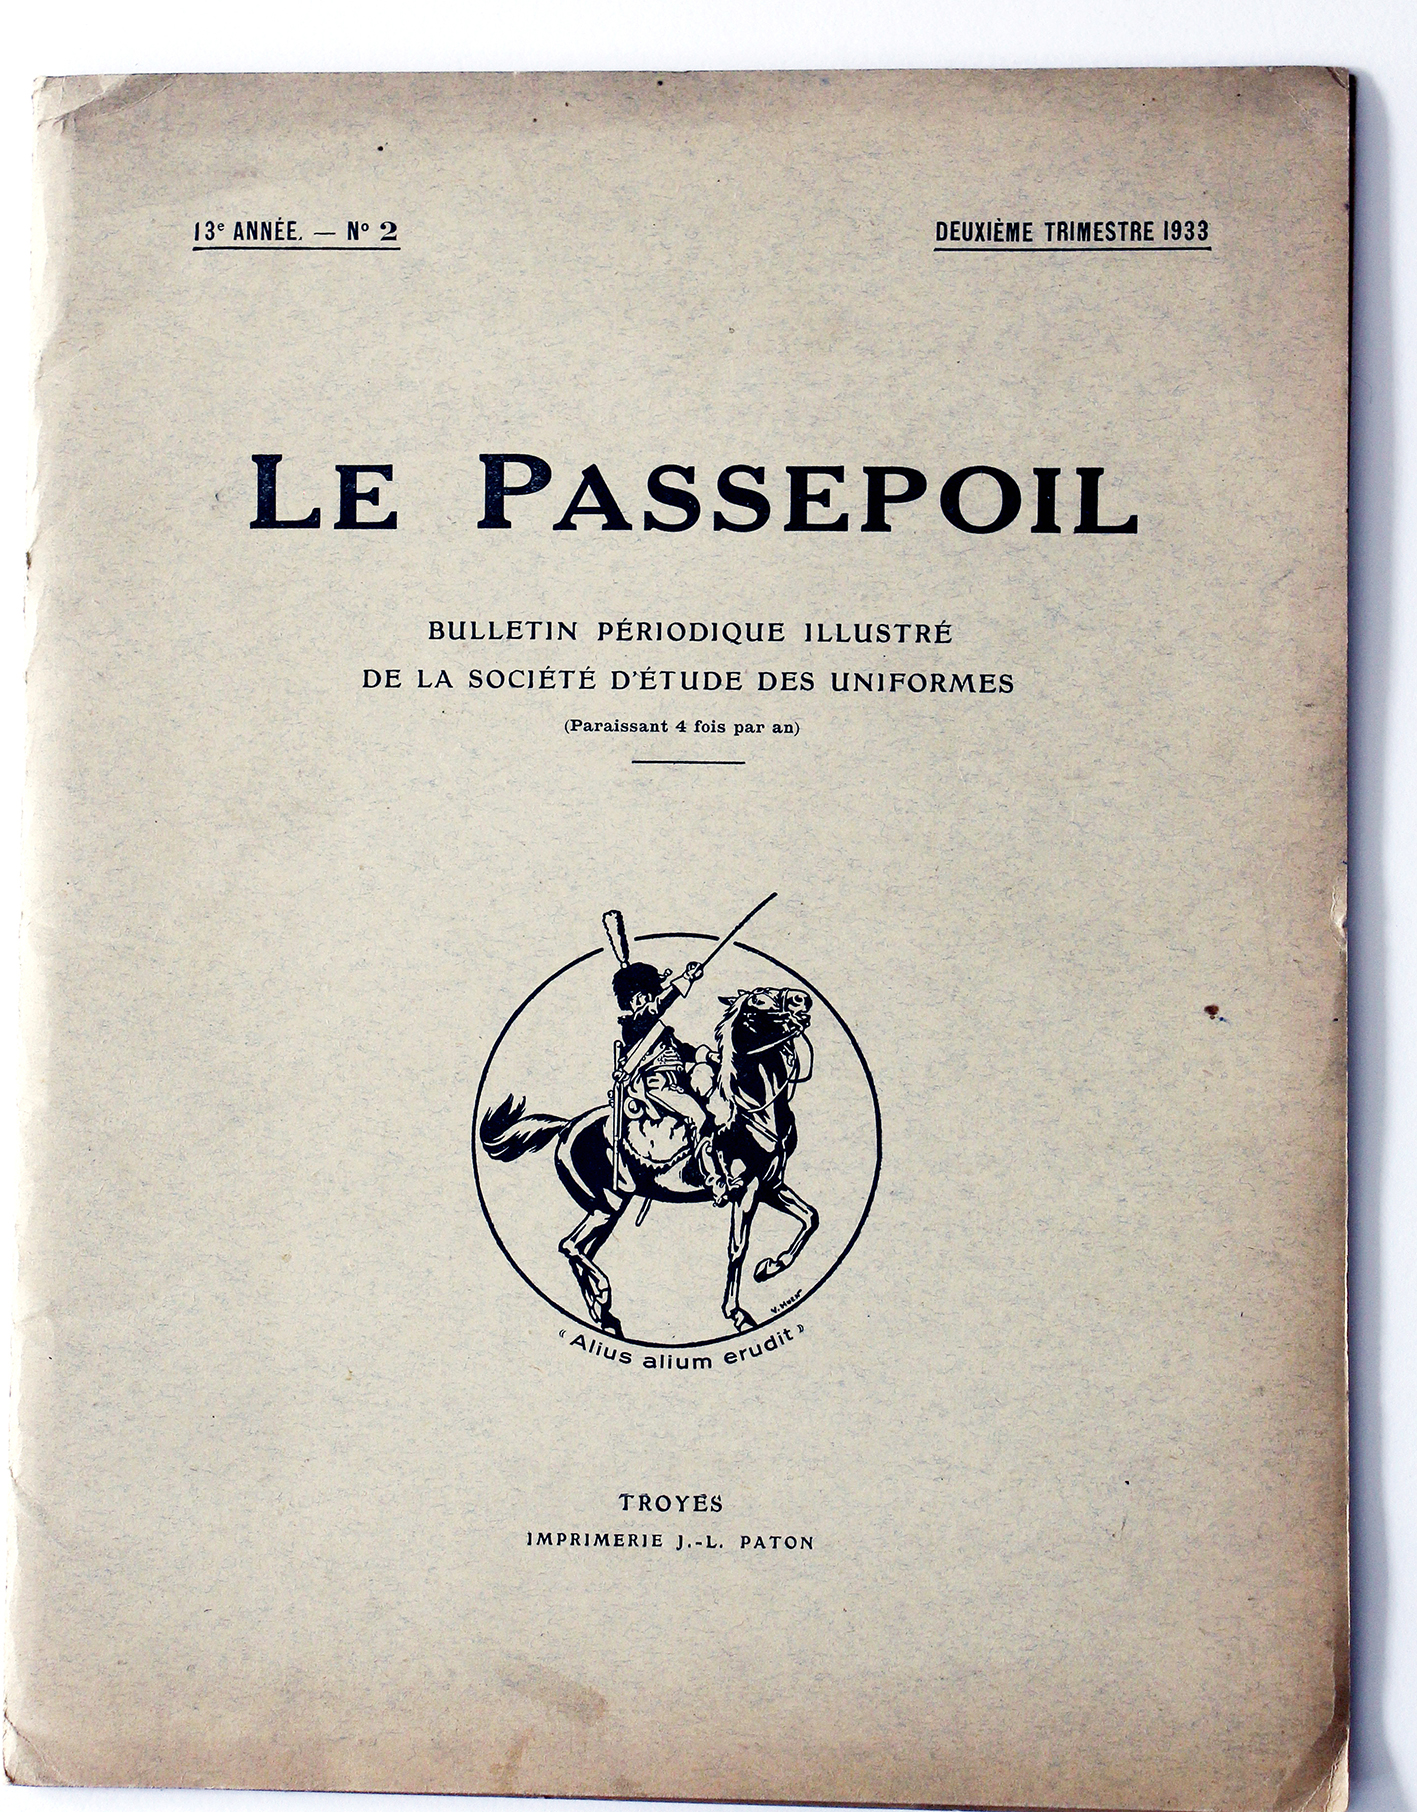 Le passepoil année 1933 complète - 13 année N°2 - Bucquoy - Uniformes Armée Française